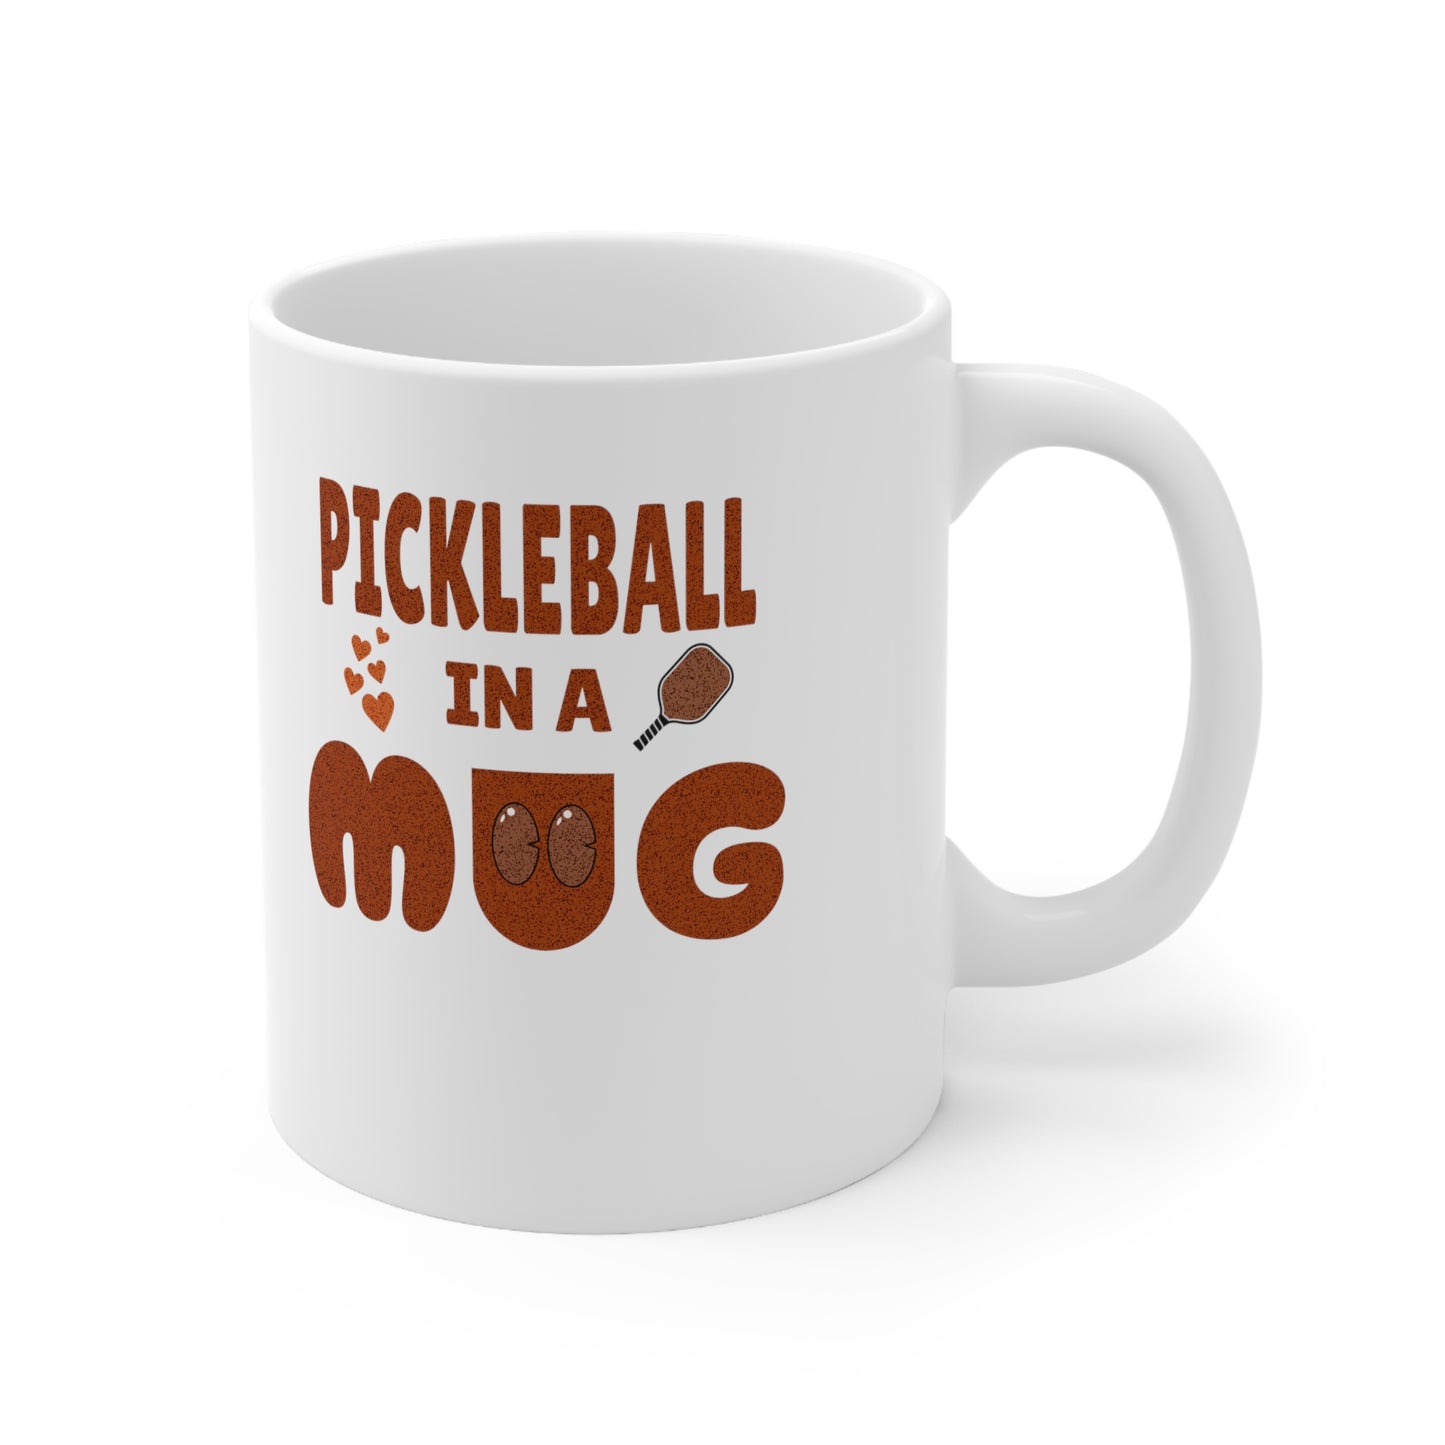 Custom 'Pickleball in a Mug' Coffee Cup